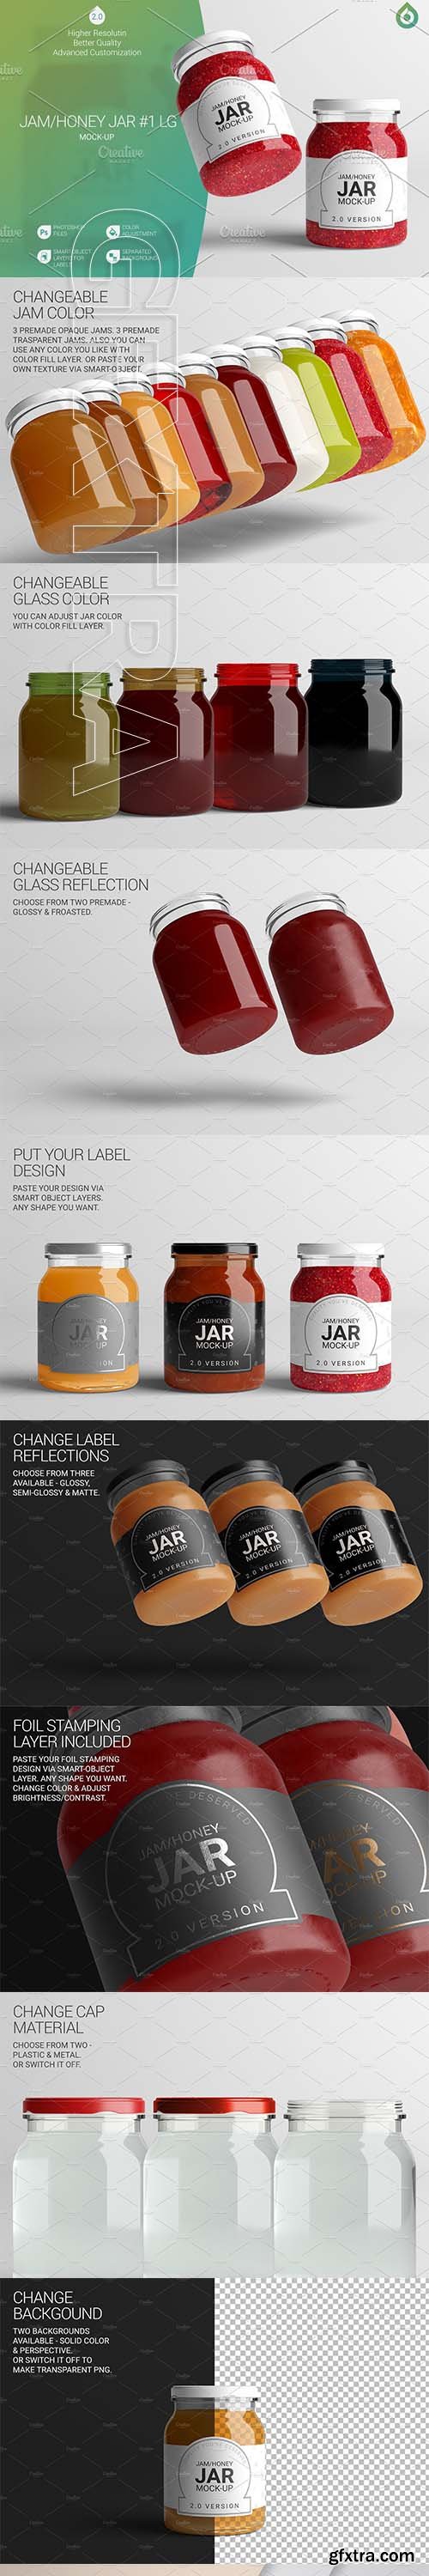 CreativeMarket - Jam Honey Jar LG Mock-Up #1 V2,0 3332012